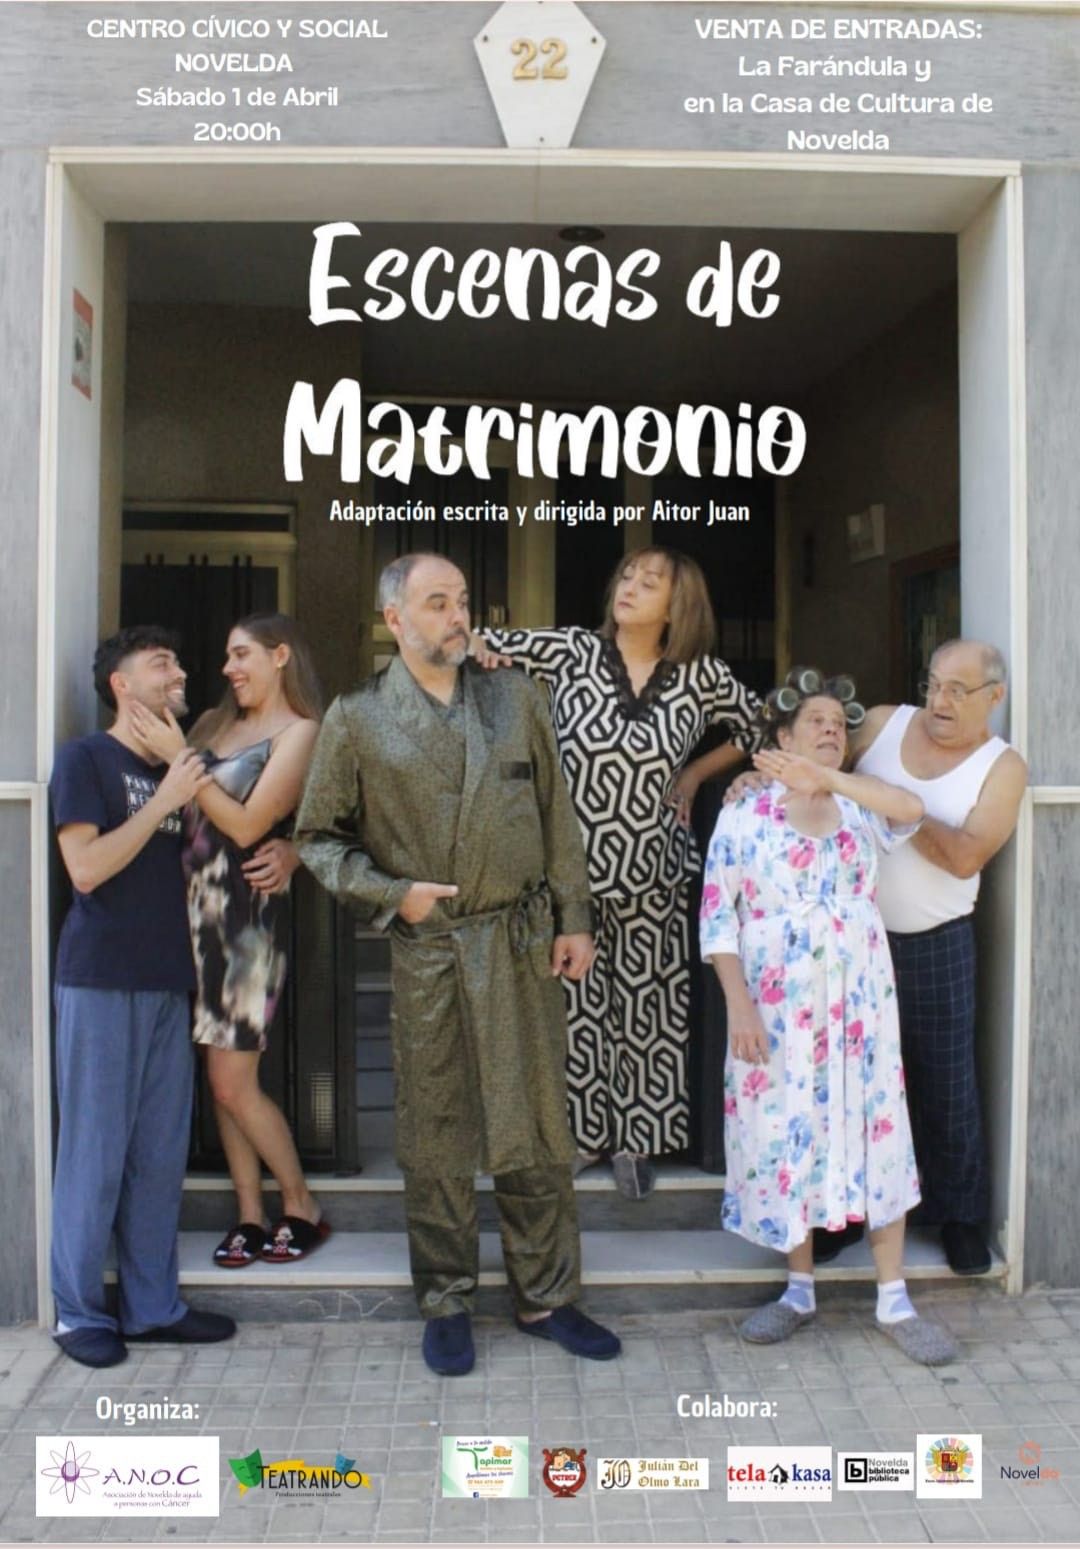 Ayuntamiento de Novelda image_6483441 Escenas de Matrimonio 